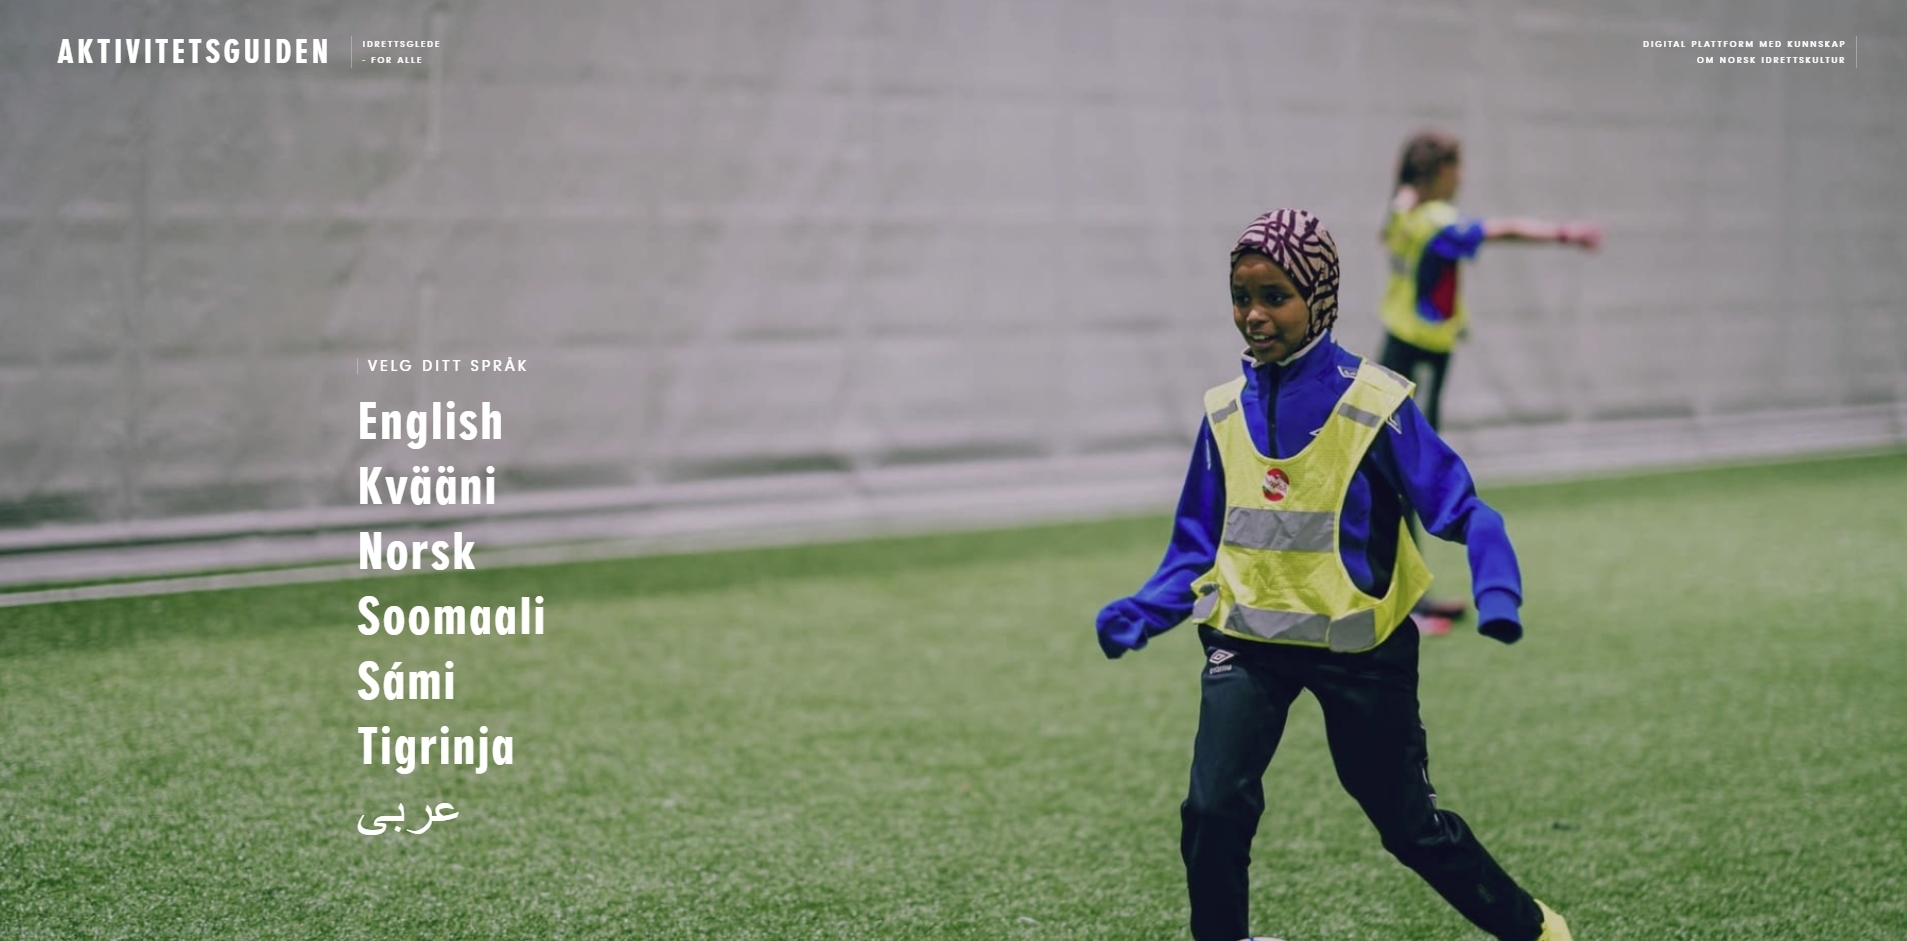 Aktivitetsguiden er en digital plattform med kunnskap om norsk idrettskultur på 8 forskjellige språk.